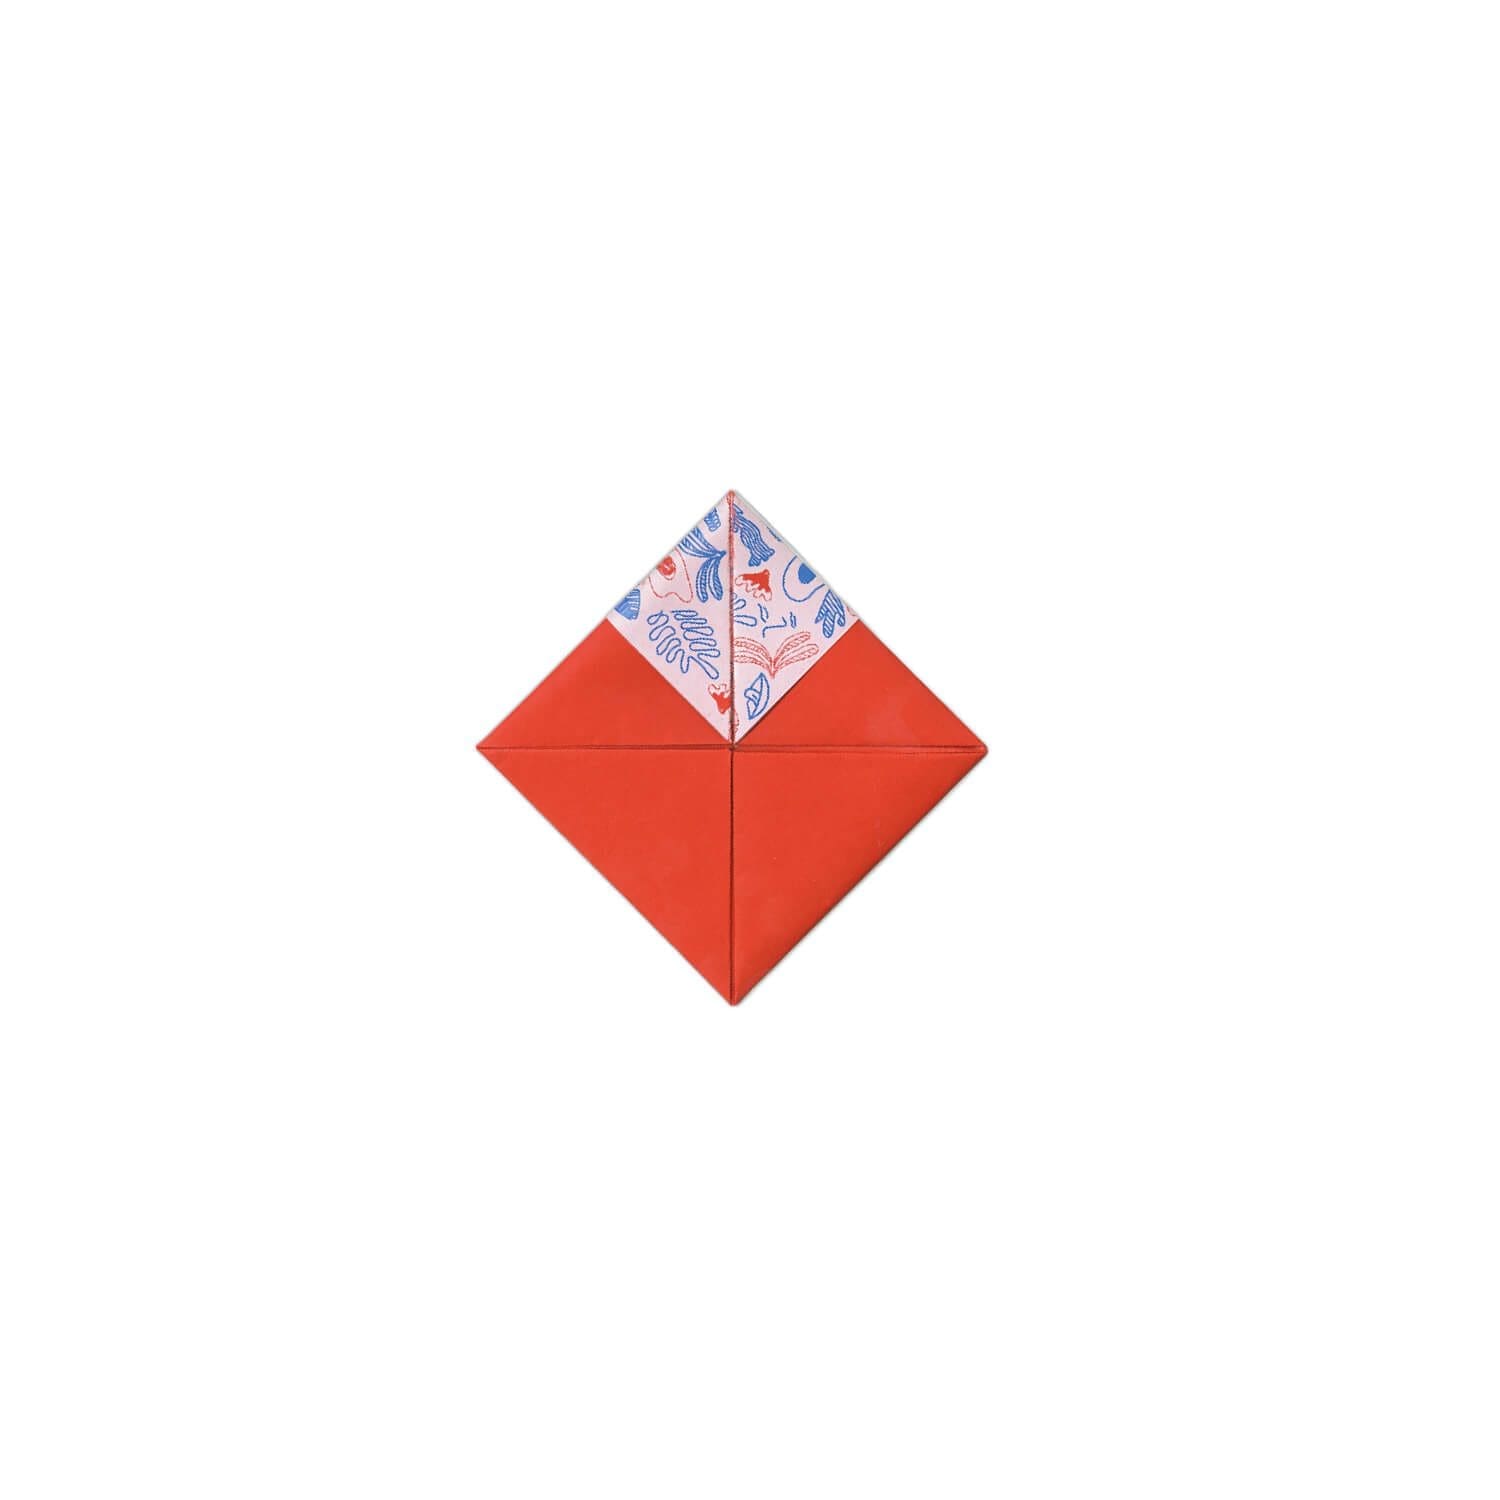 un voucher ludique en origami pour Dear Breakfast. Le papier devient objet à collectionner. Une cocotte à offrir… signé ichetkar